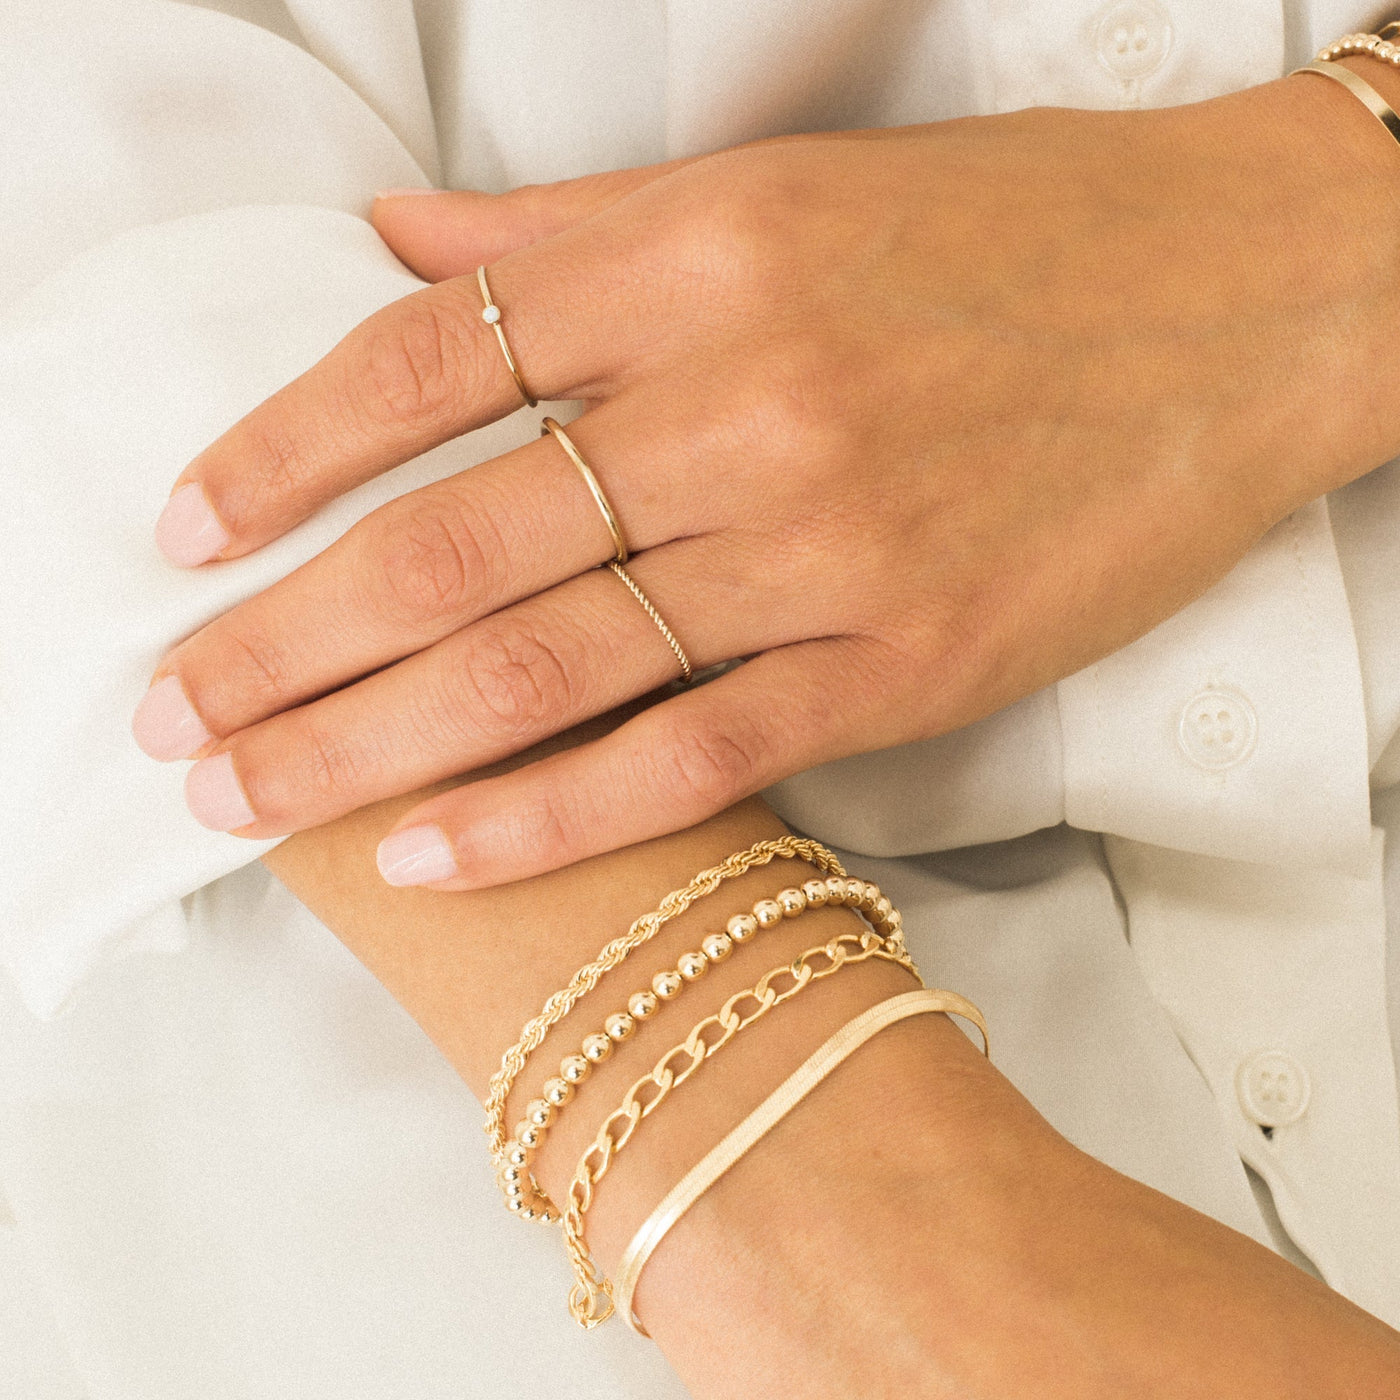 Stretch Bead Bracelet | Simple & Dainty Jewelry